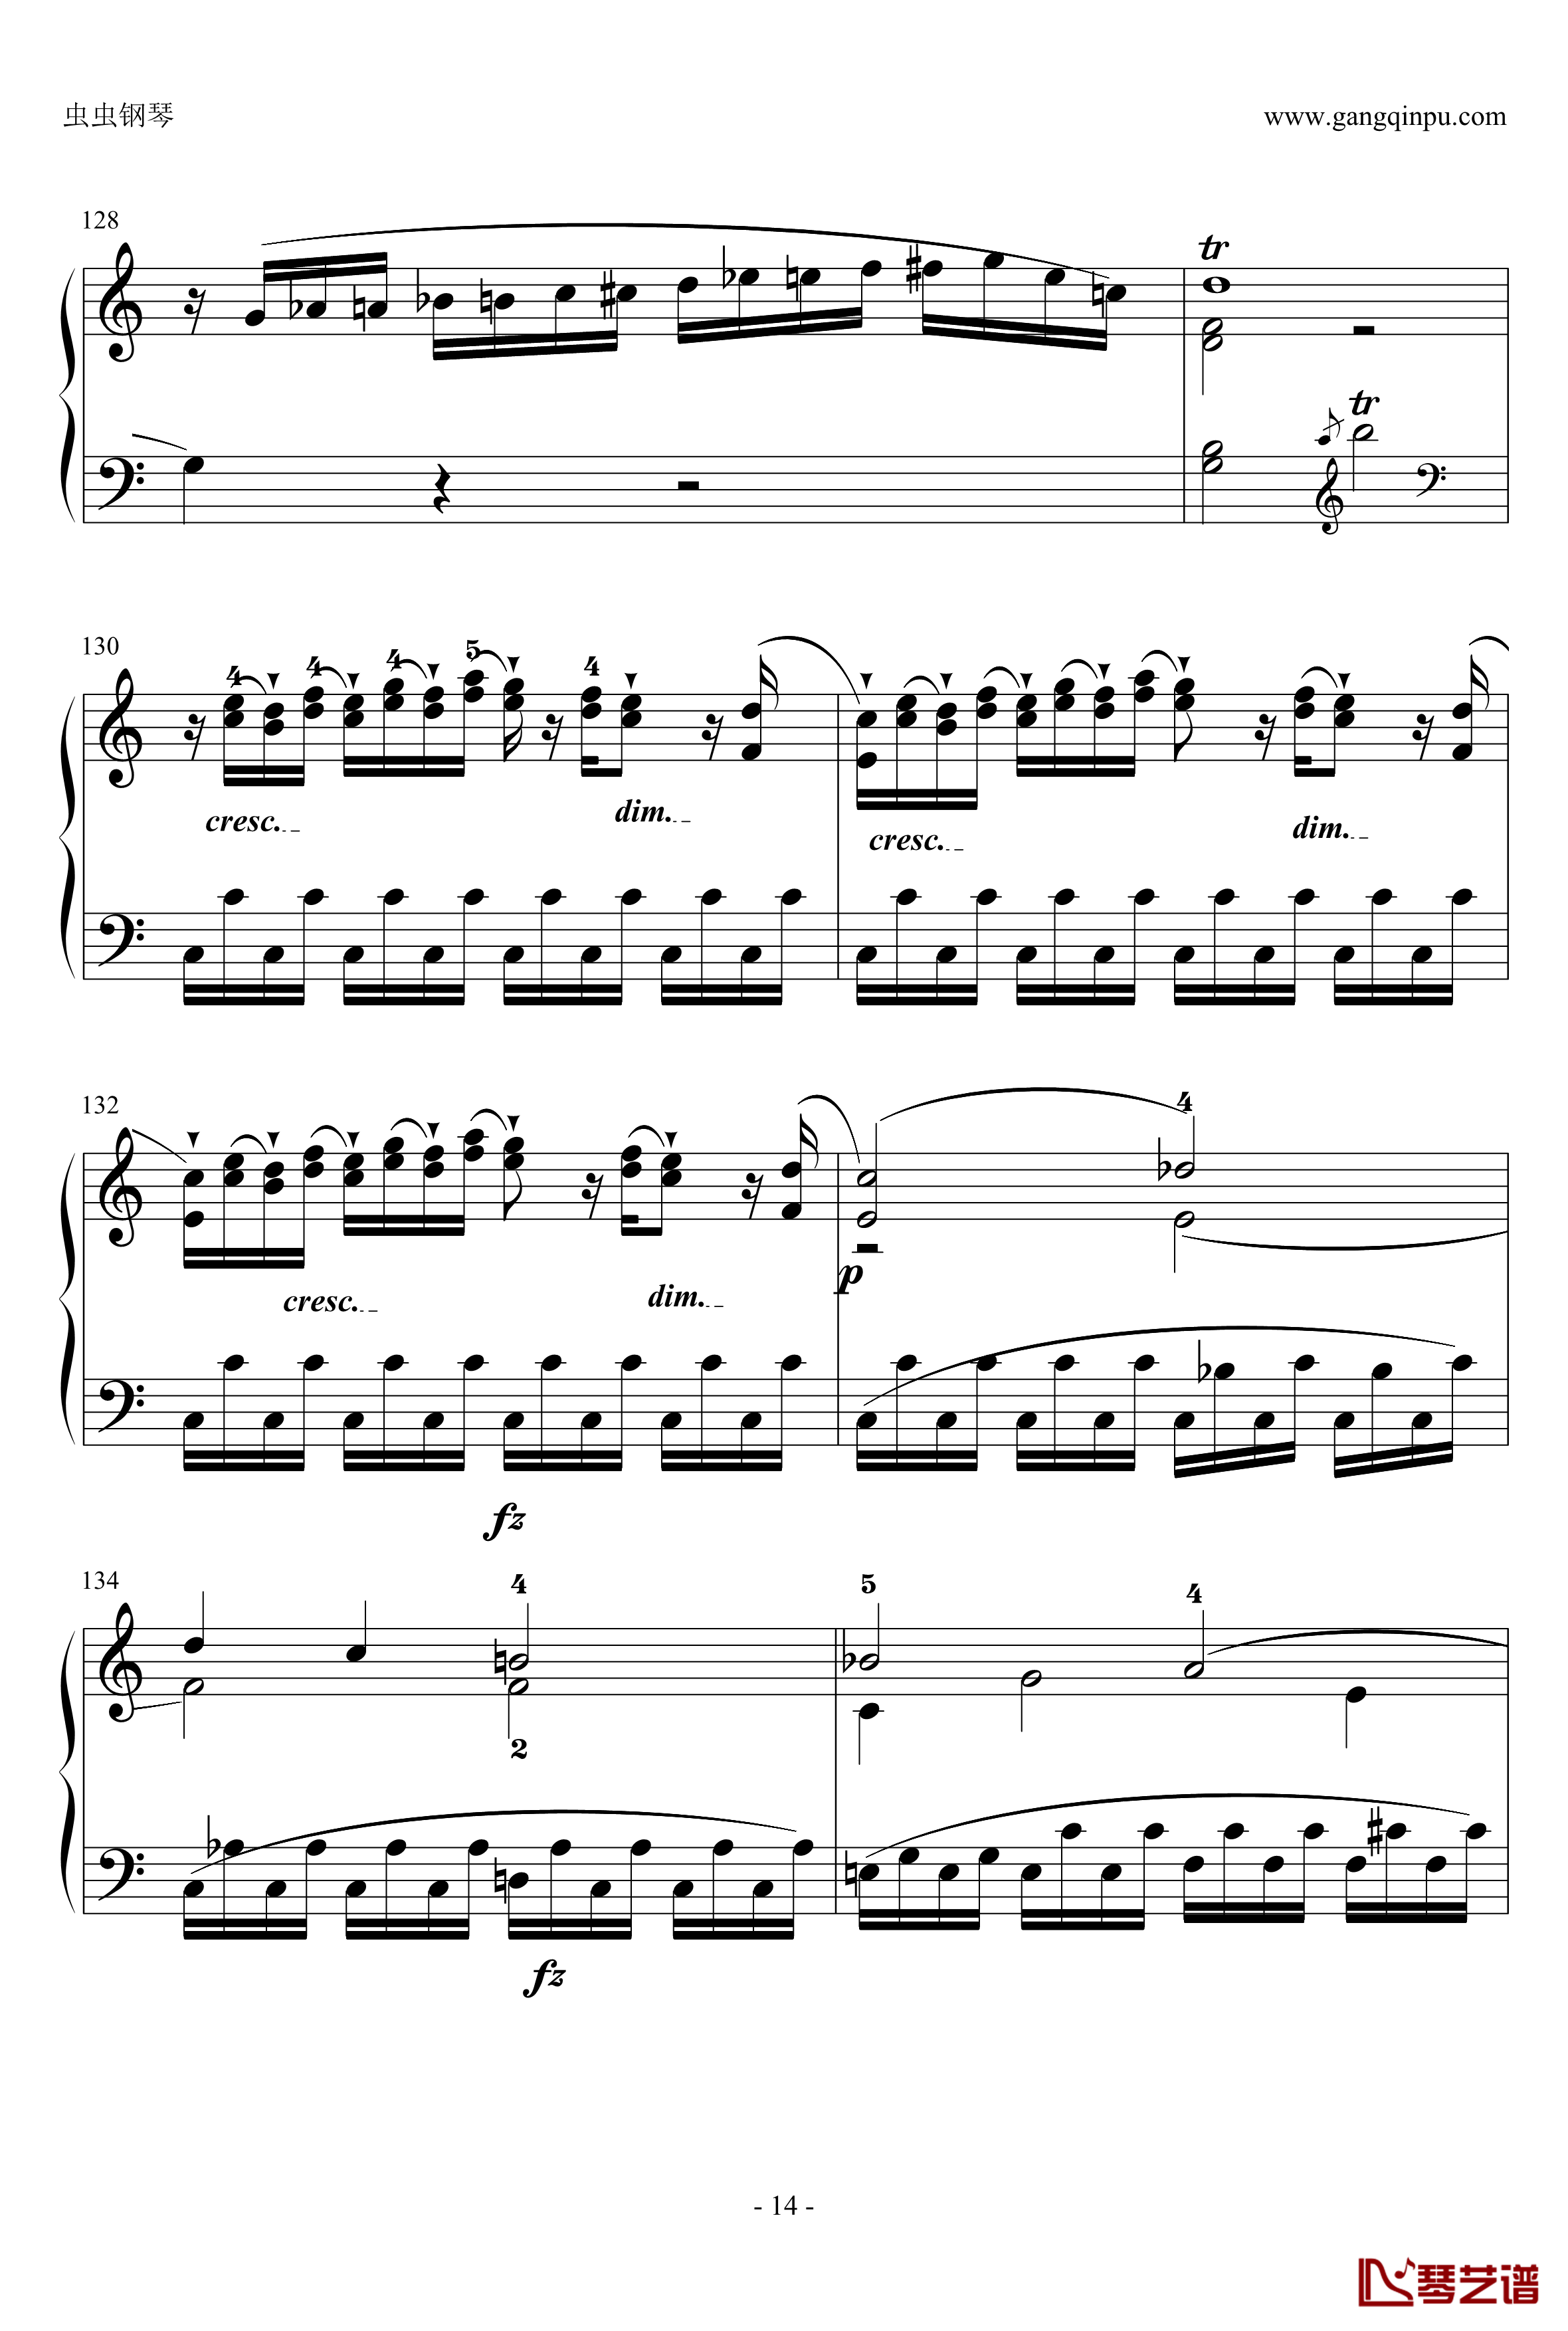 C大调奏鸣曲钢琴谱第一乐章-海顿14